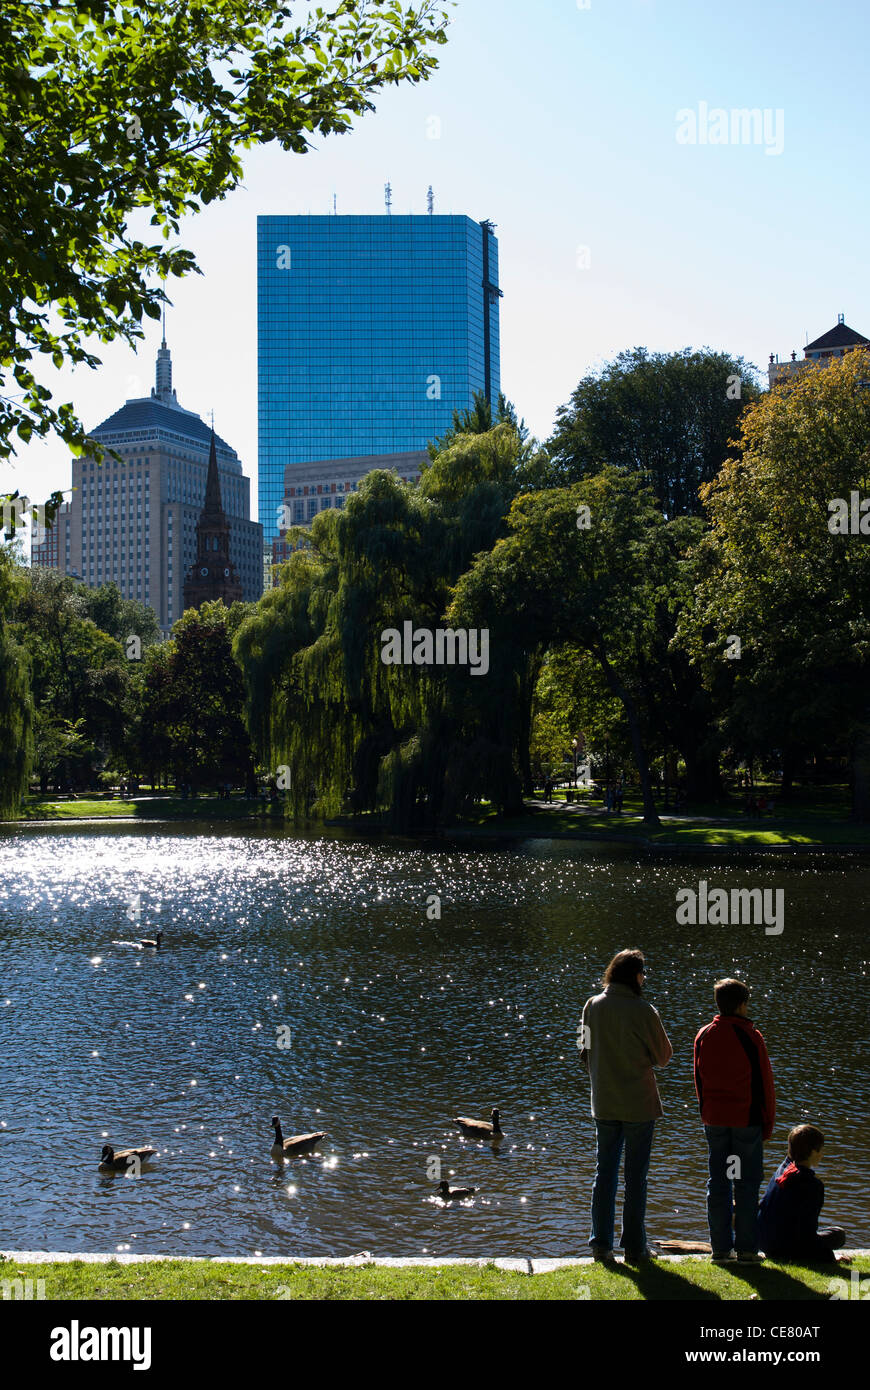 Boston Public Garden, Boston, Massachusetts, USA. Stock Photo